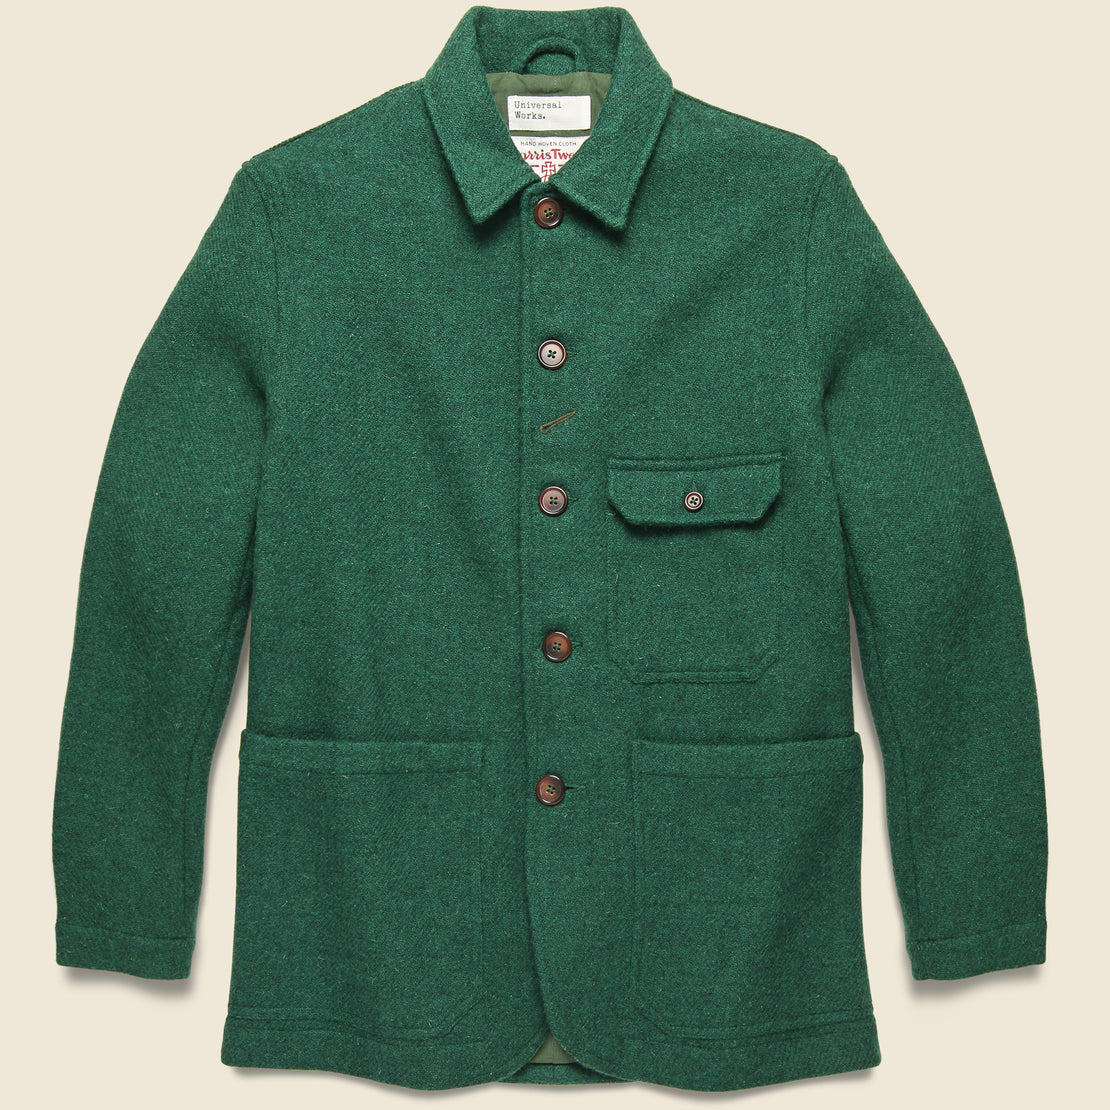 Universal Works Norfolk Bakers Jacket - Green Tweed